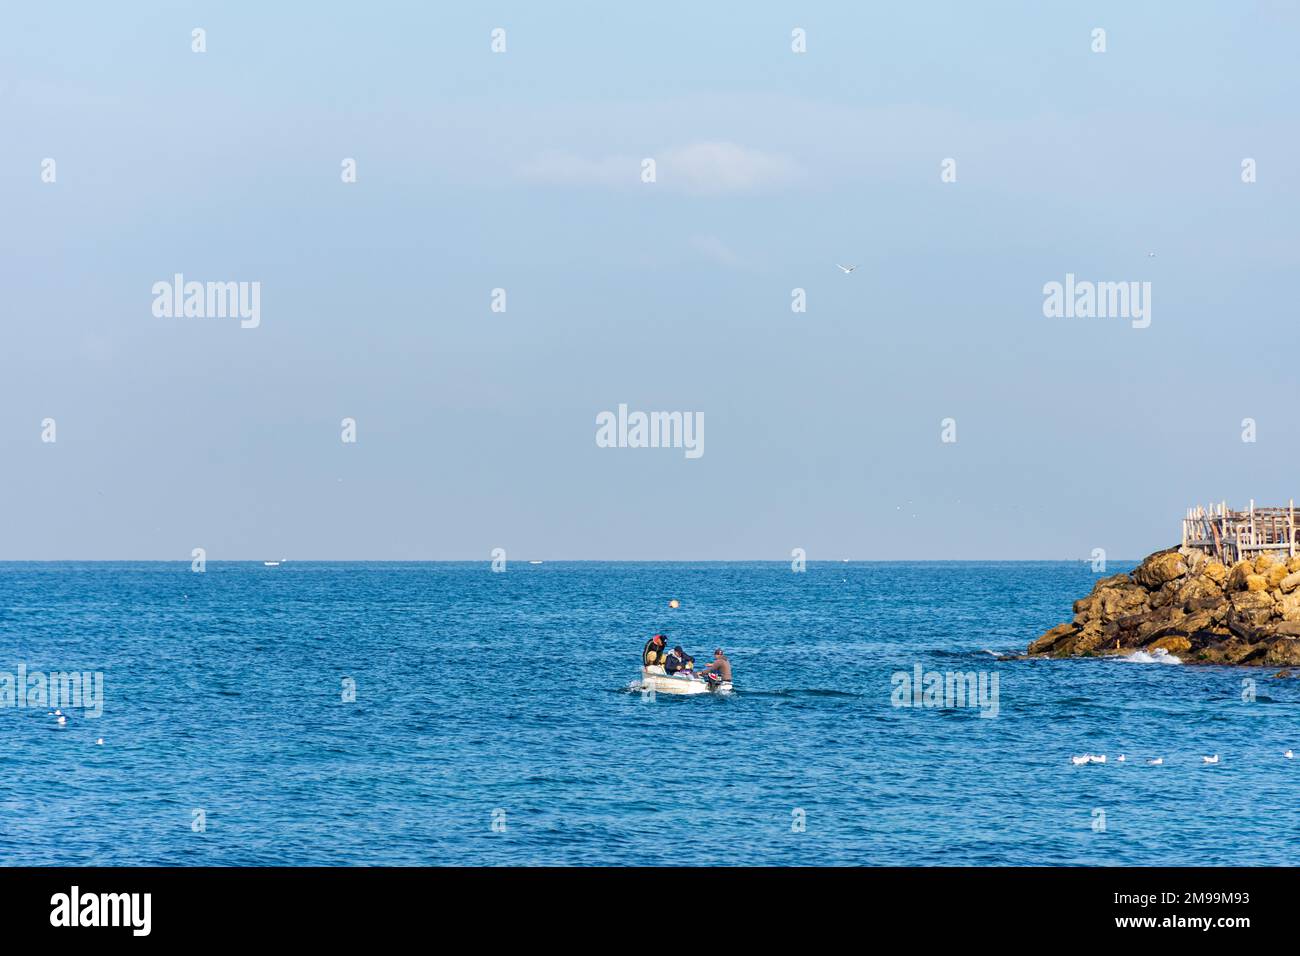 Pêcheur sur un bateau de pêche en bois sur la mer Méditerranée. Banque D'Images